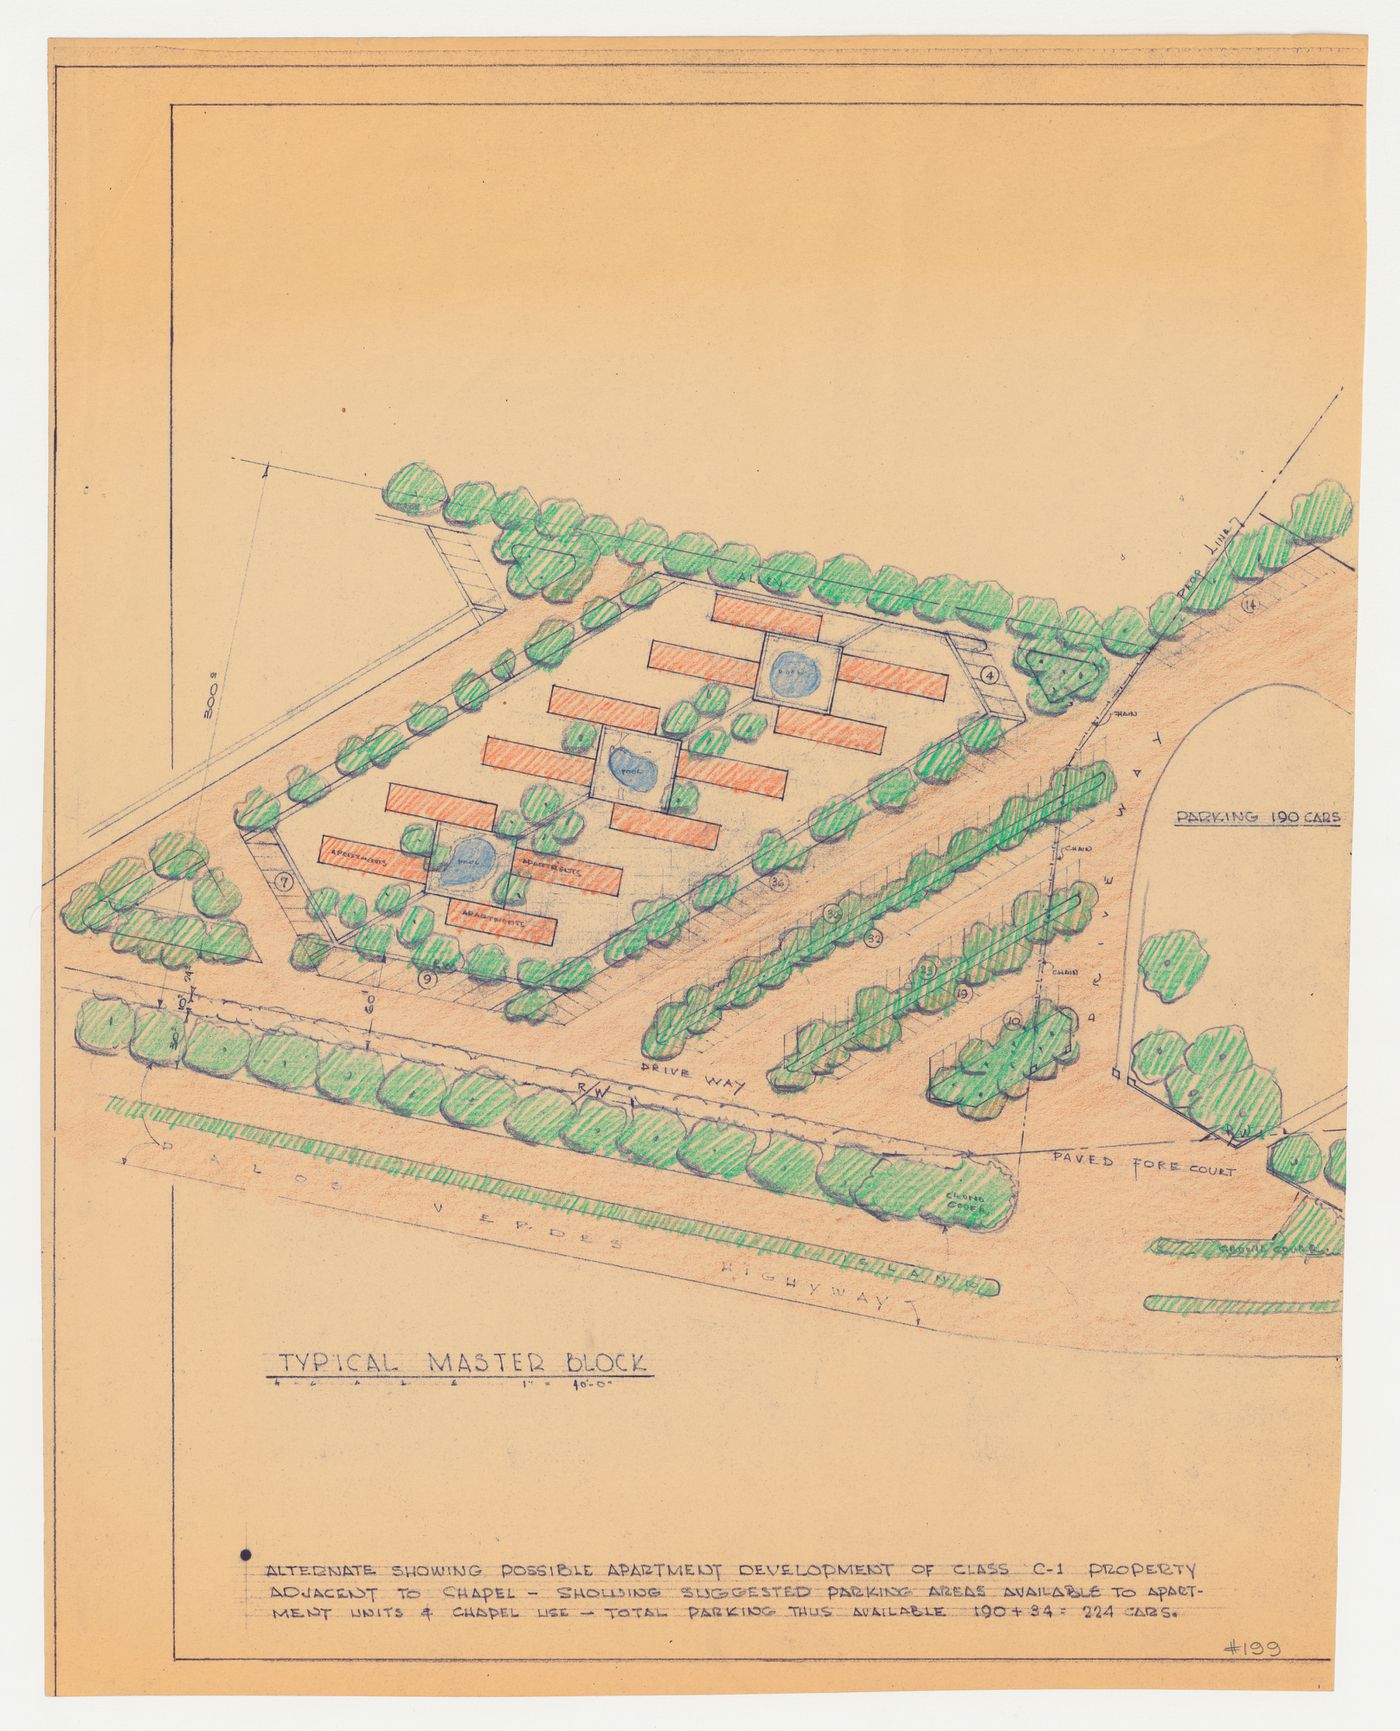 Wayfarers' Chapel, Palos Verdes, California: Site plan for apartment development on adjacent lot